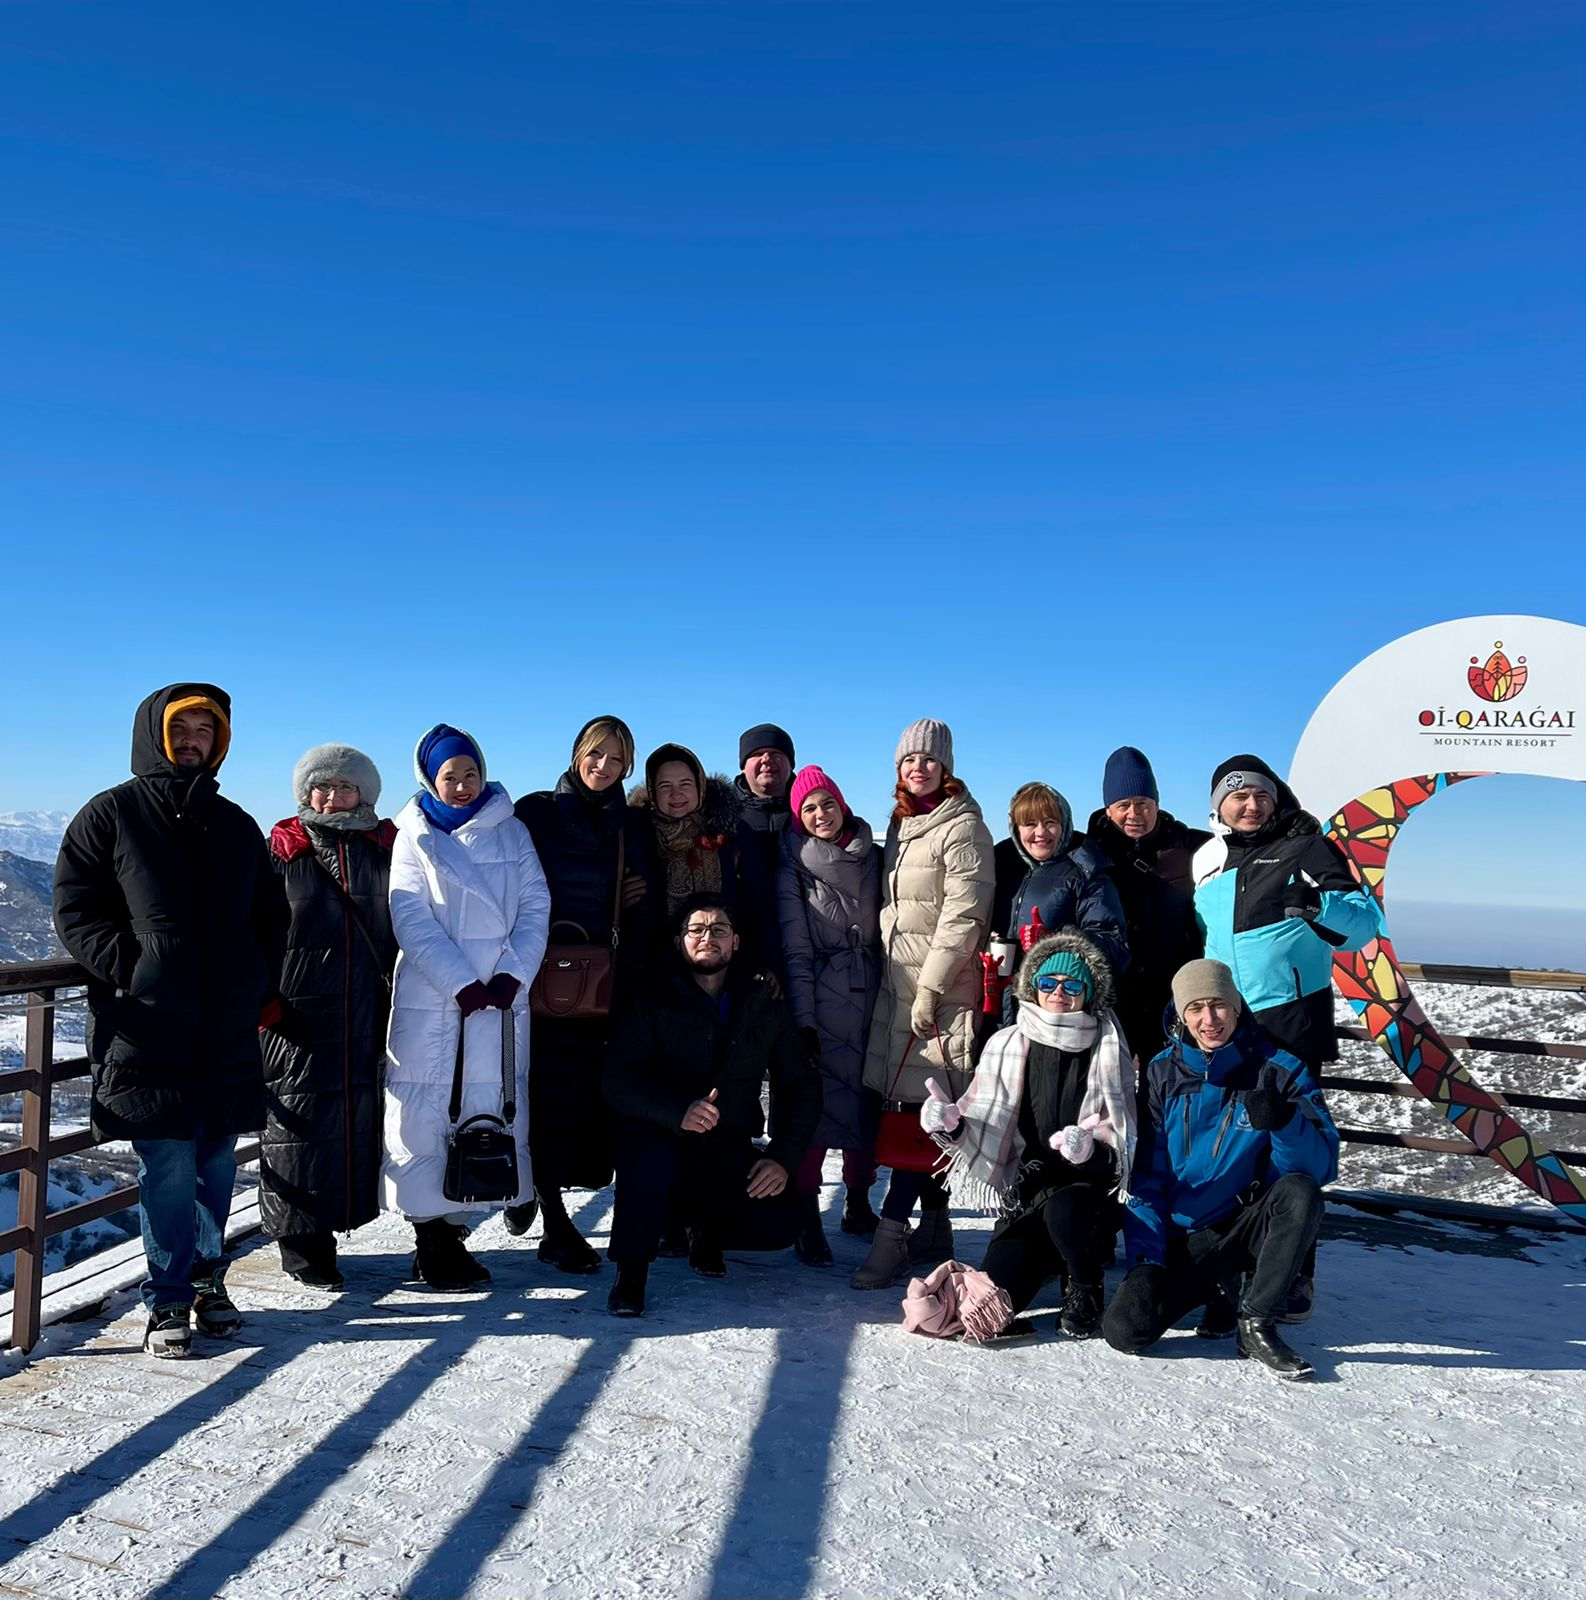 Mountain resort “Oi-Qaragai” посетила делегация рестораторов, туроператоров и блогеров из России